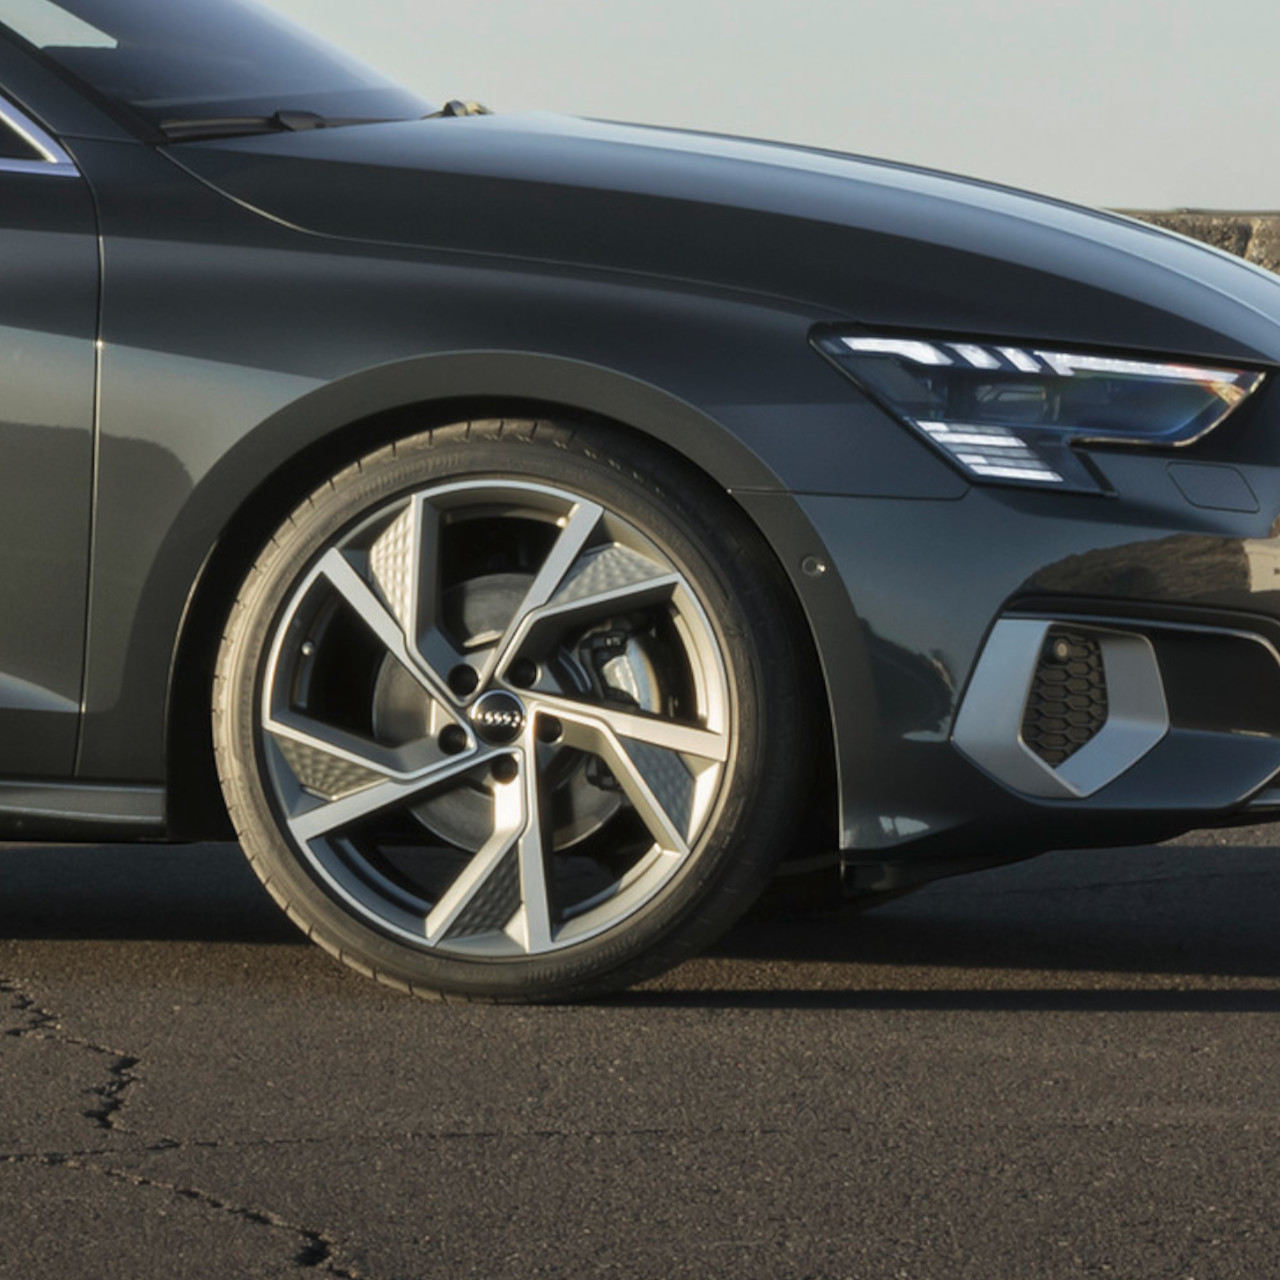 Blick auf Reifen und Felgen des Audi A3